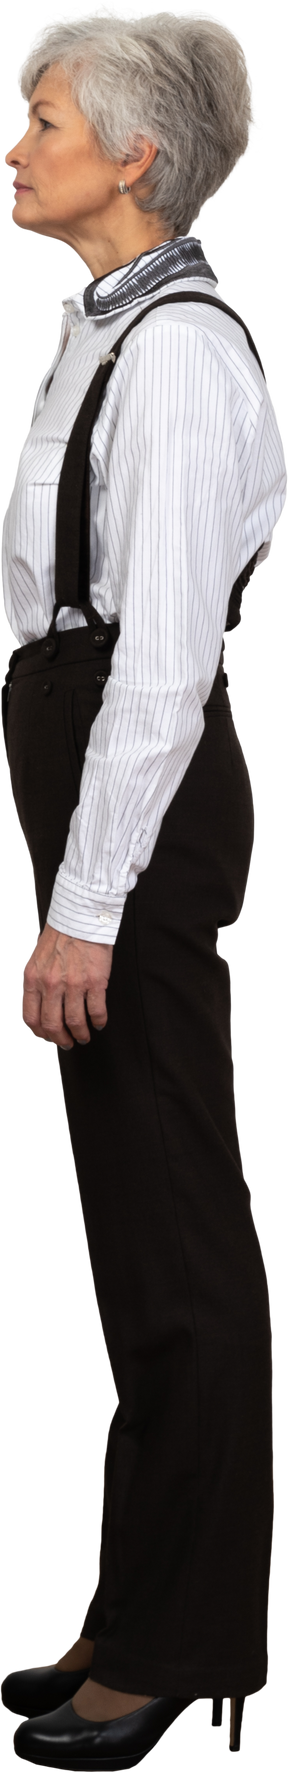 Vista lateral de una mujer mayor segura vestida con ropa de oficina